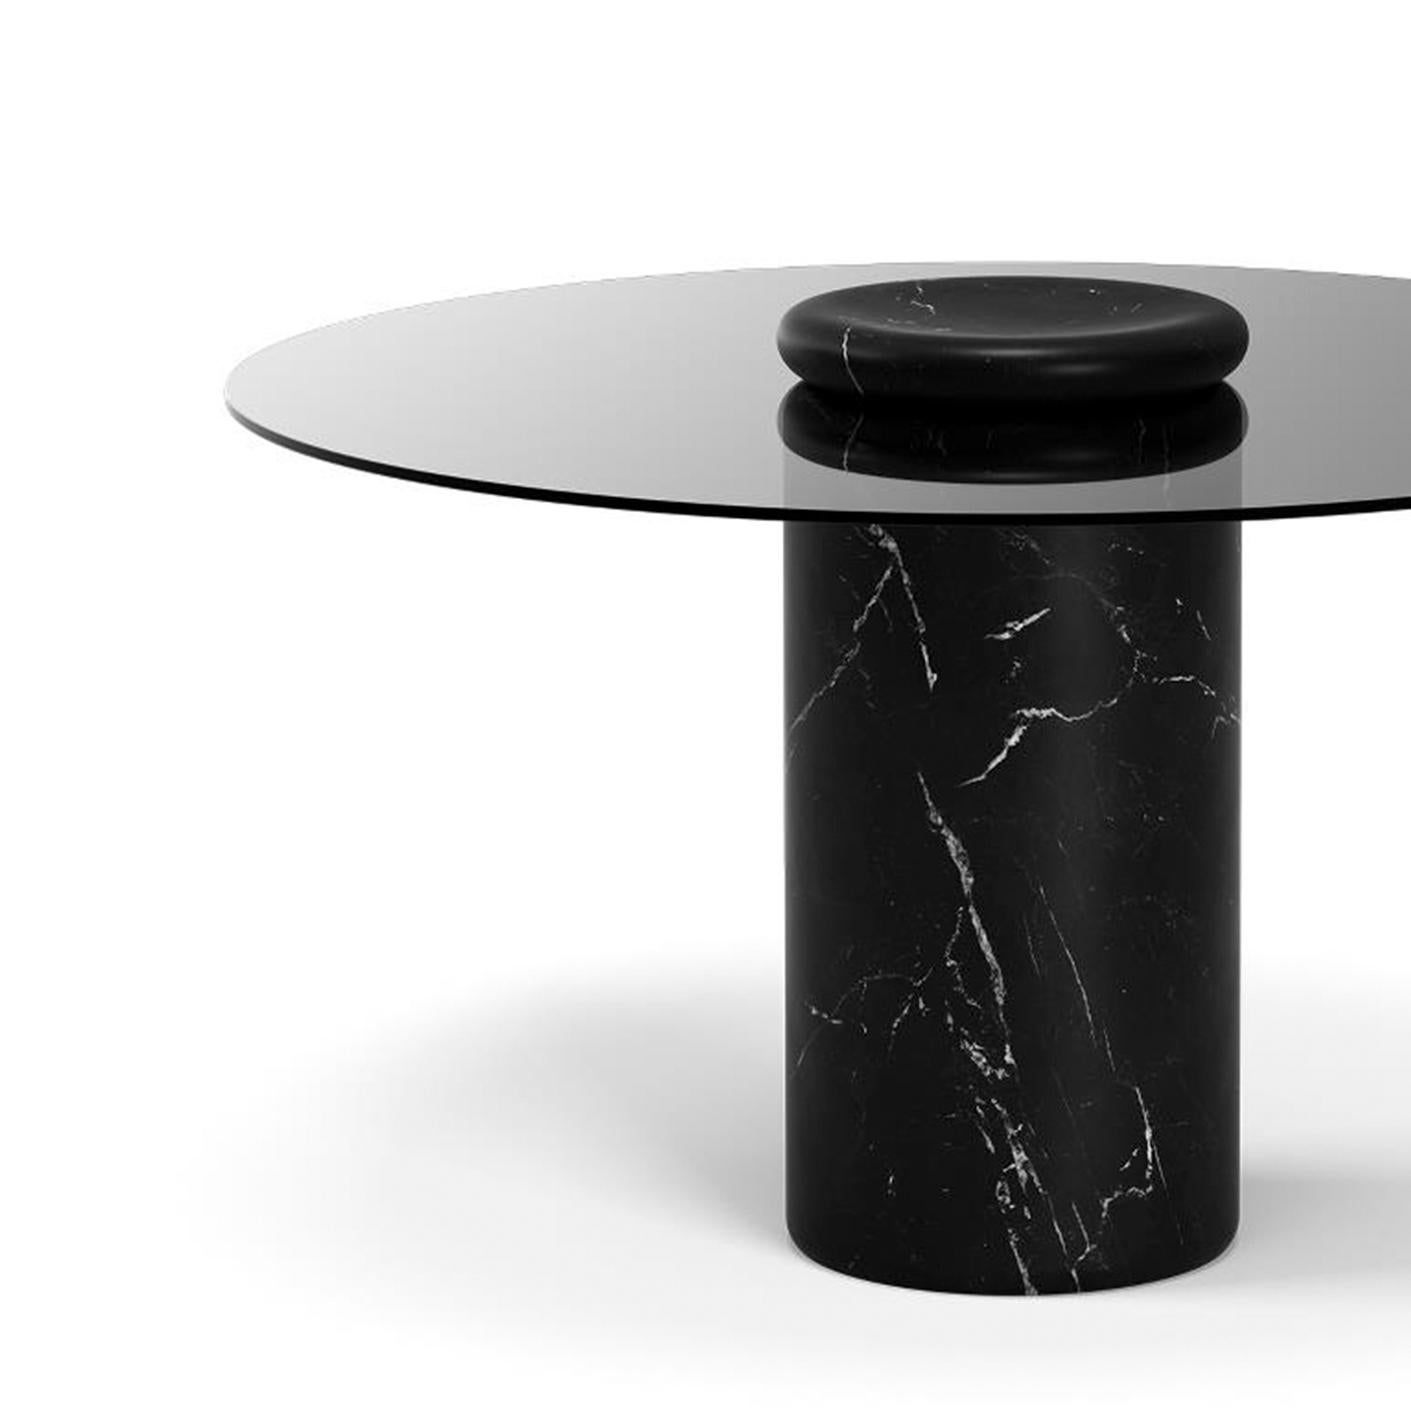 Tisch entworfen von Angelo Mangiarotti 

Castore ist ein Tisch aus Glas und Marmor des italienischen Architekten, Bildhauers und Designers Angelo Mangiarotti. Das 1975 für Sorgente dei Mobili entworfene, unverwechselbare Design wird nun von